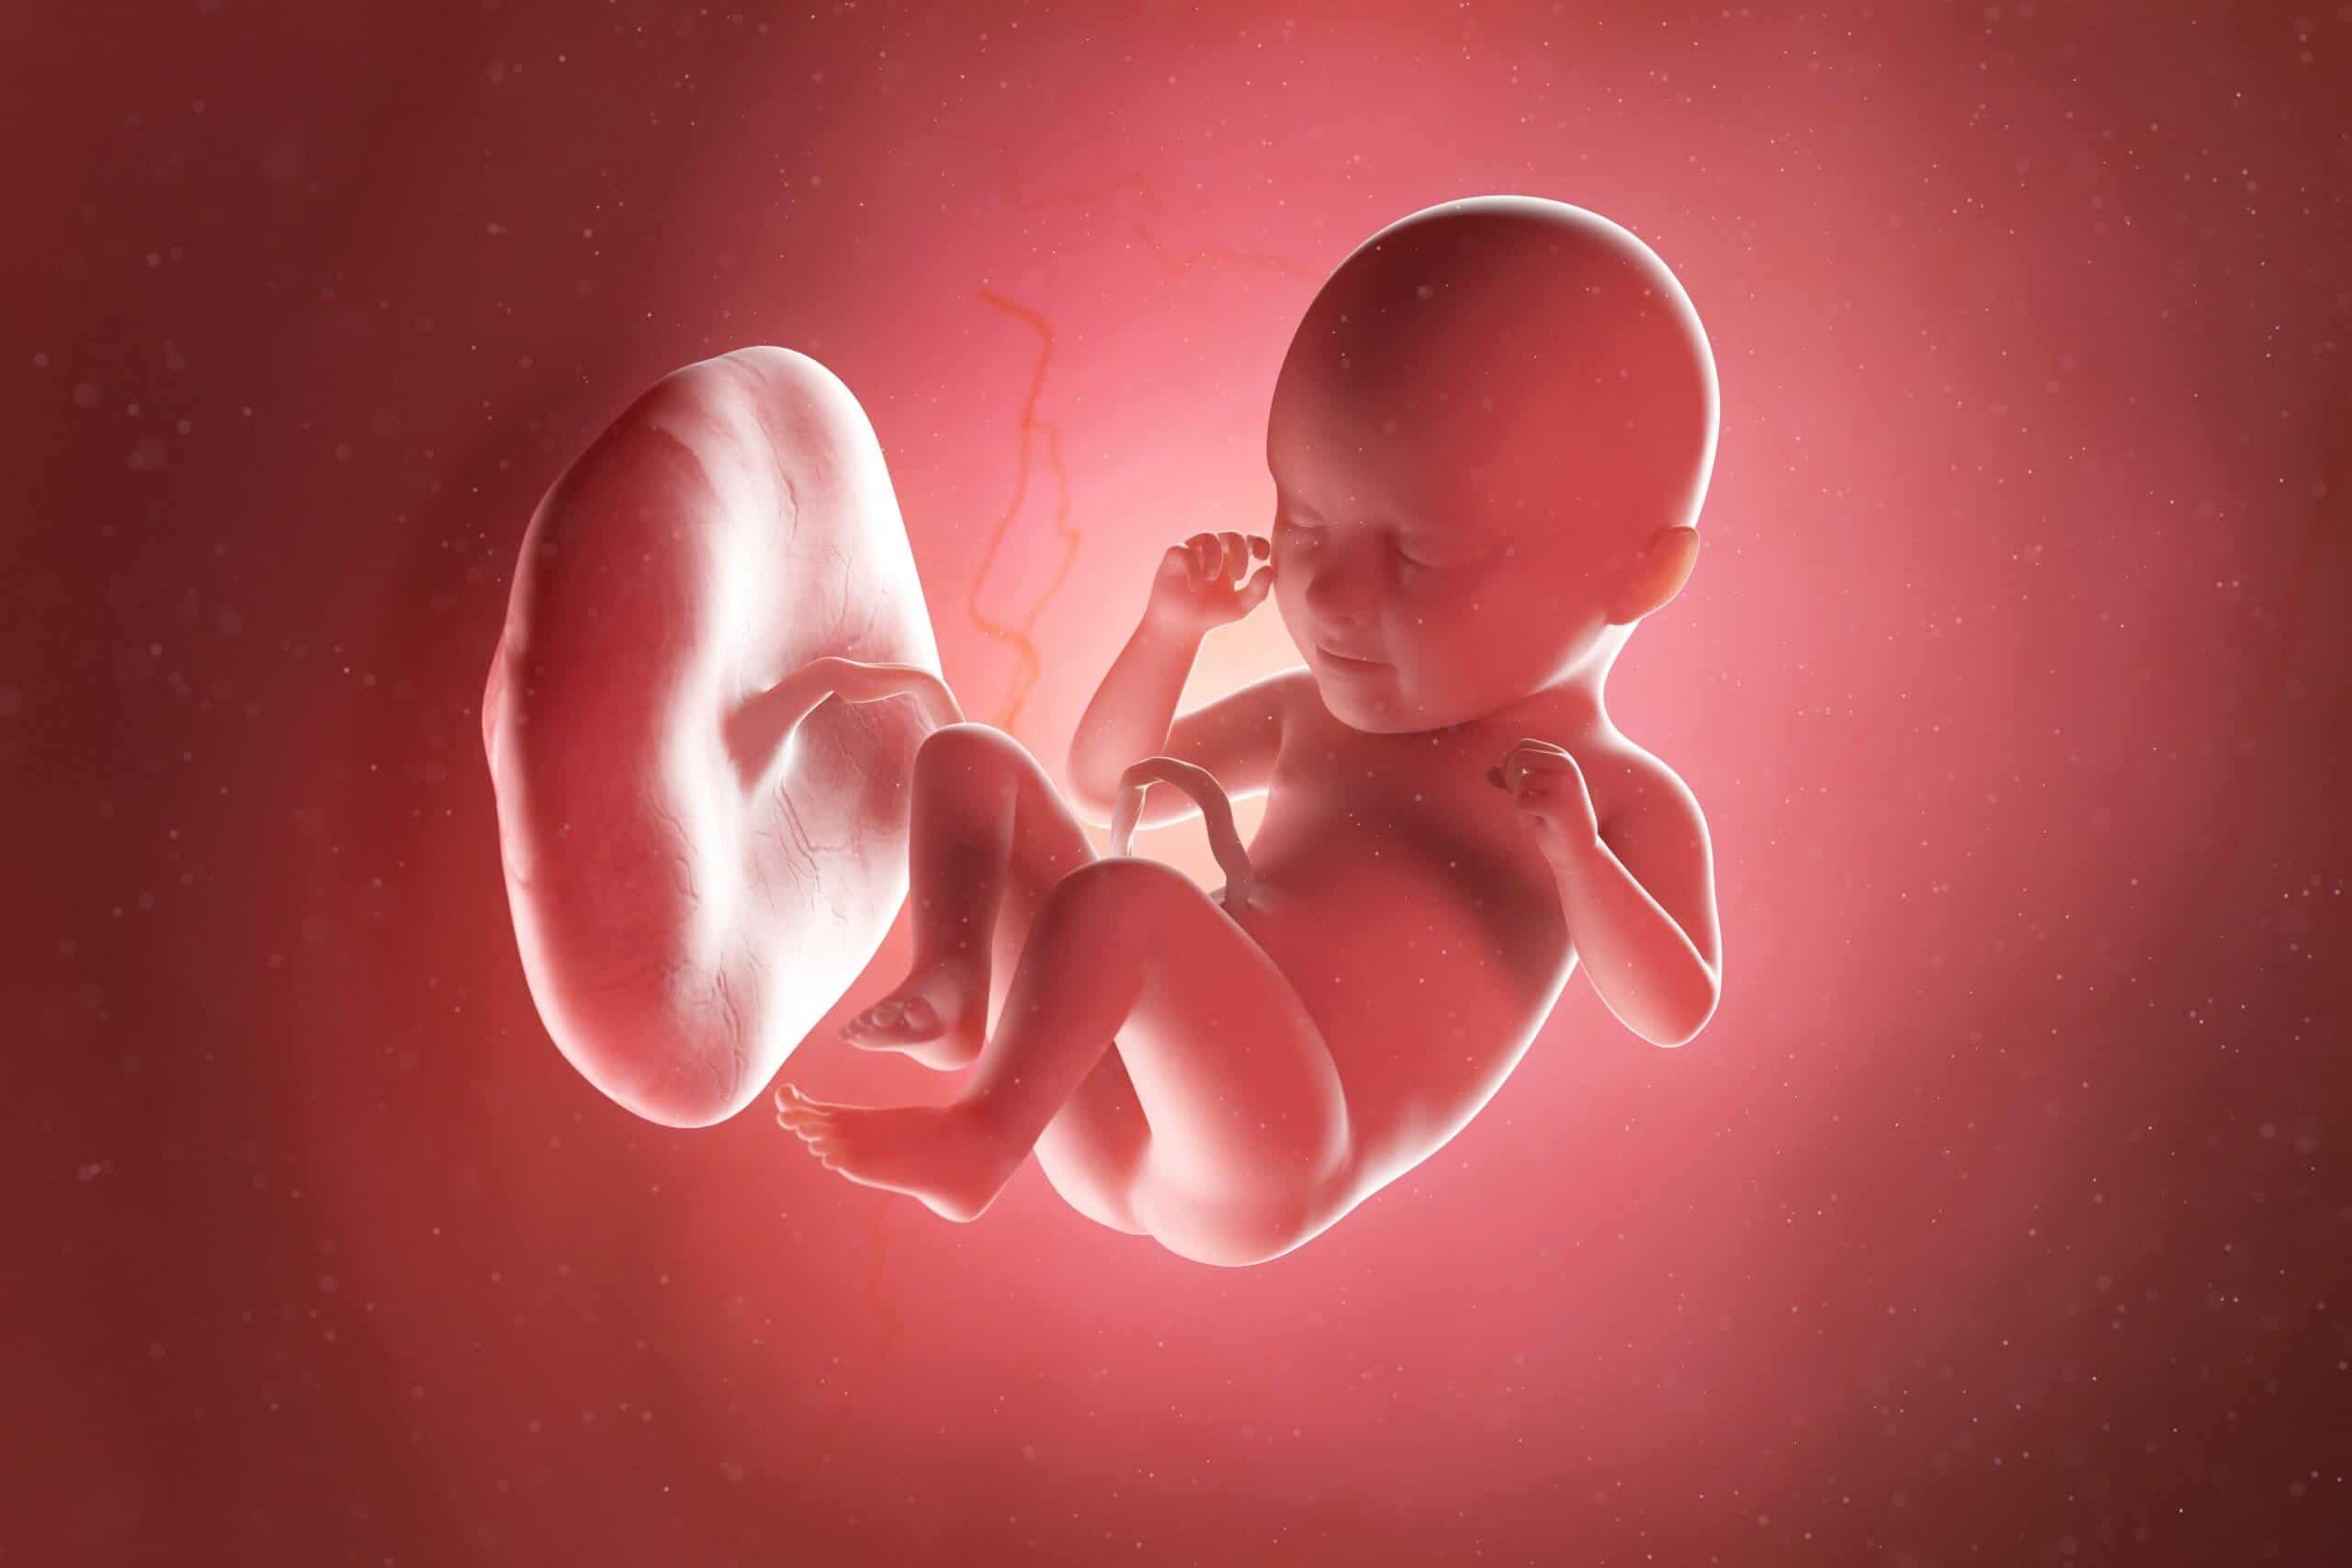 fetus week 35